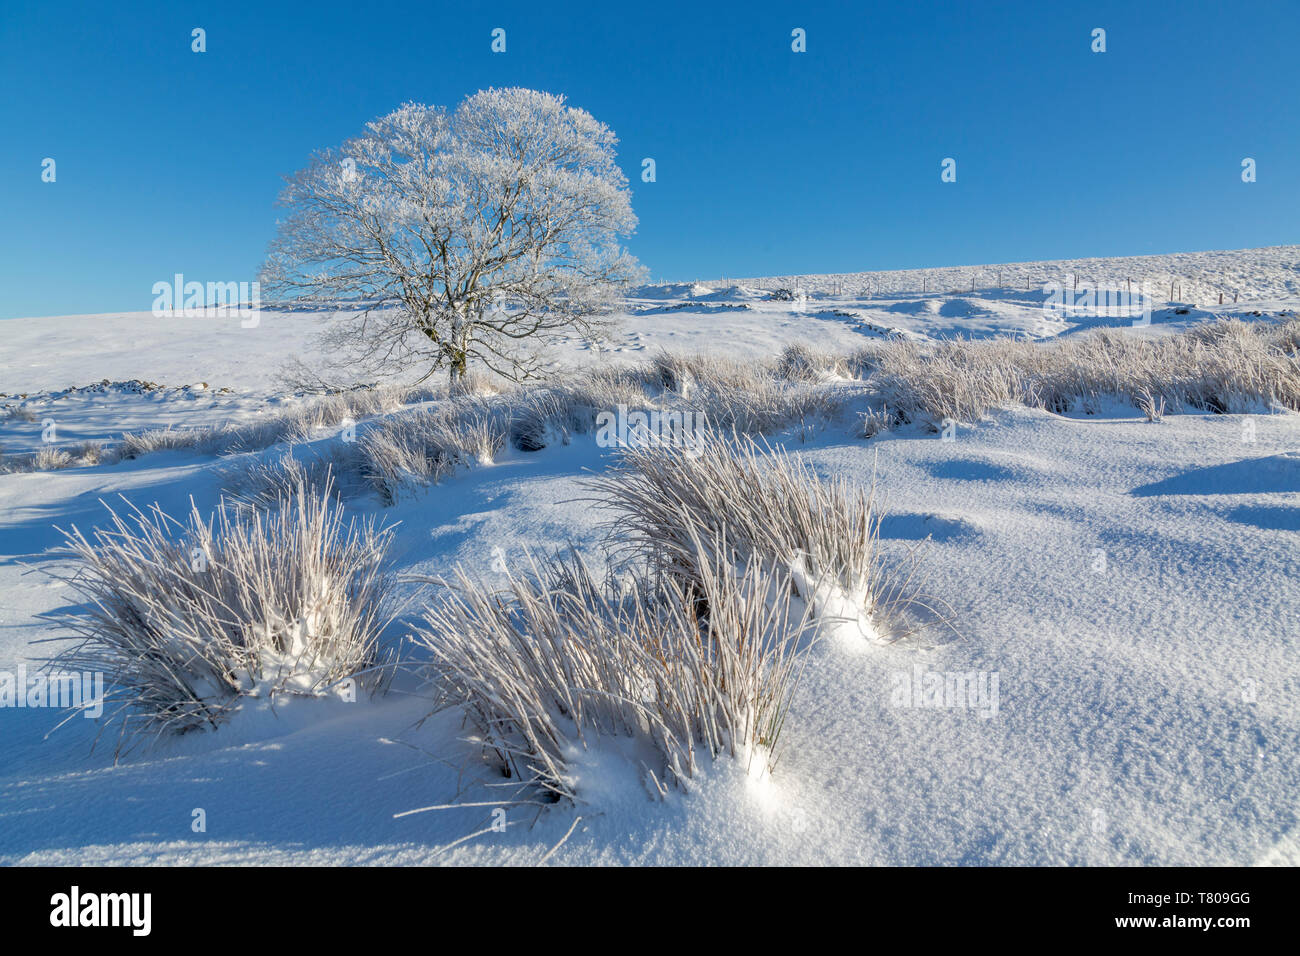 Vue panoramique de l'arbre gelé dans la neige paysage près de Buxton, High Peak Derbyshire, Angleterre, Royaume-Uni, Europe Banque D'Images